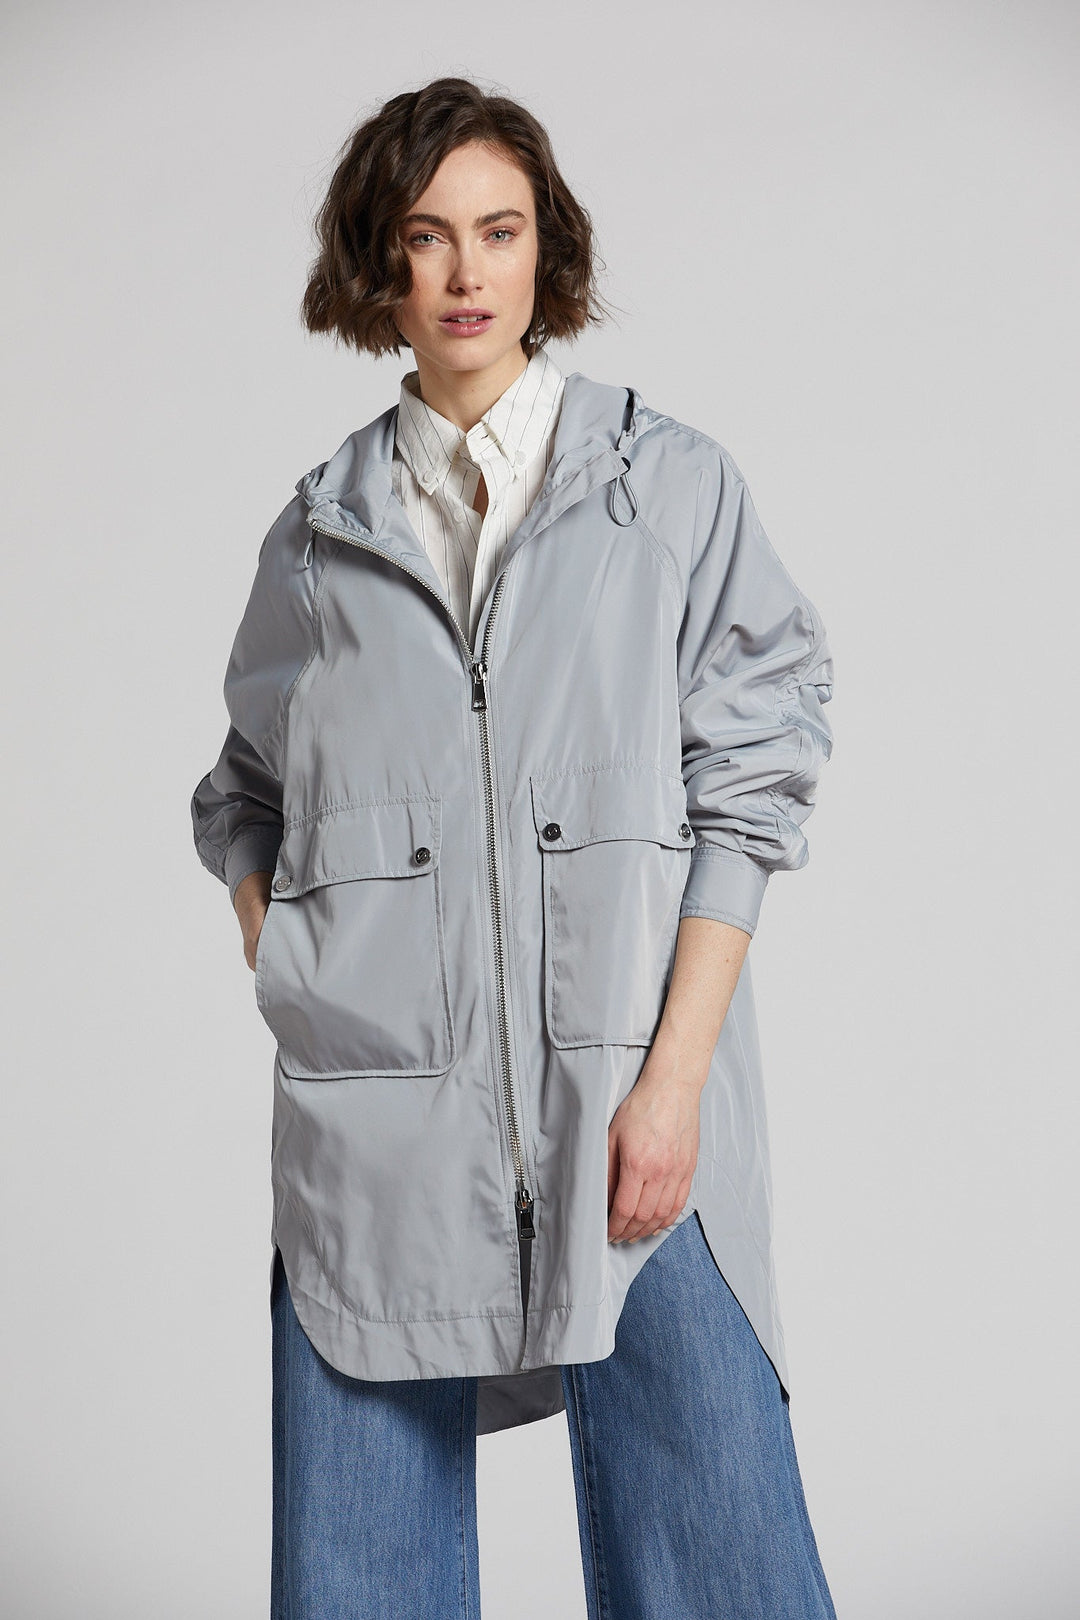 Adroit Atelier Nikita Lightweight Hooded Raincoat in Sea Star